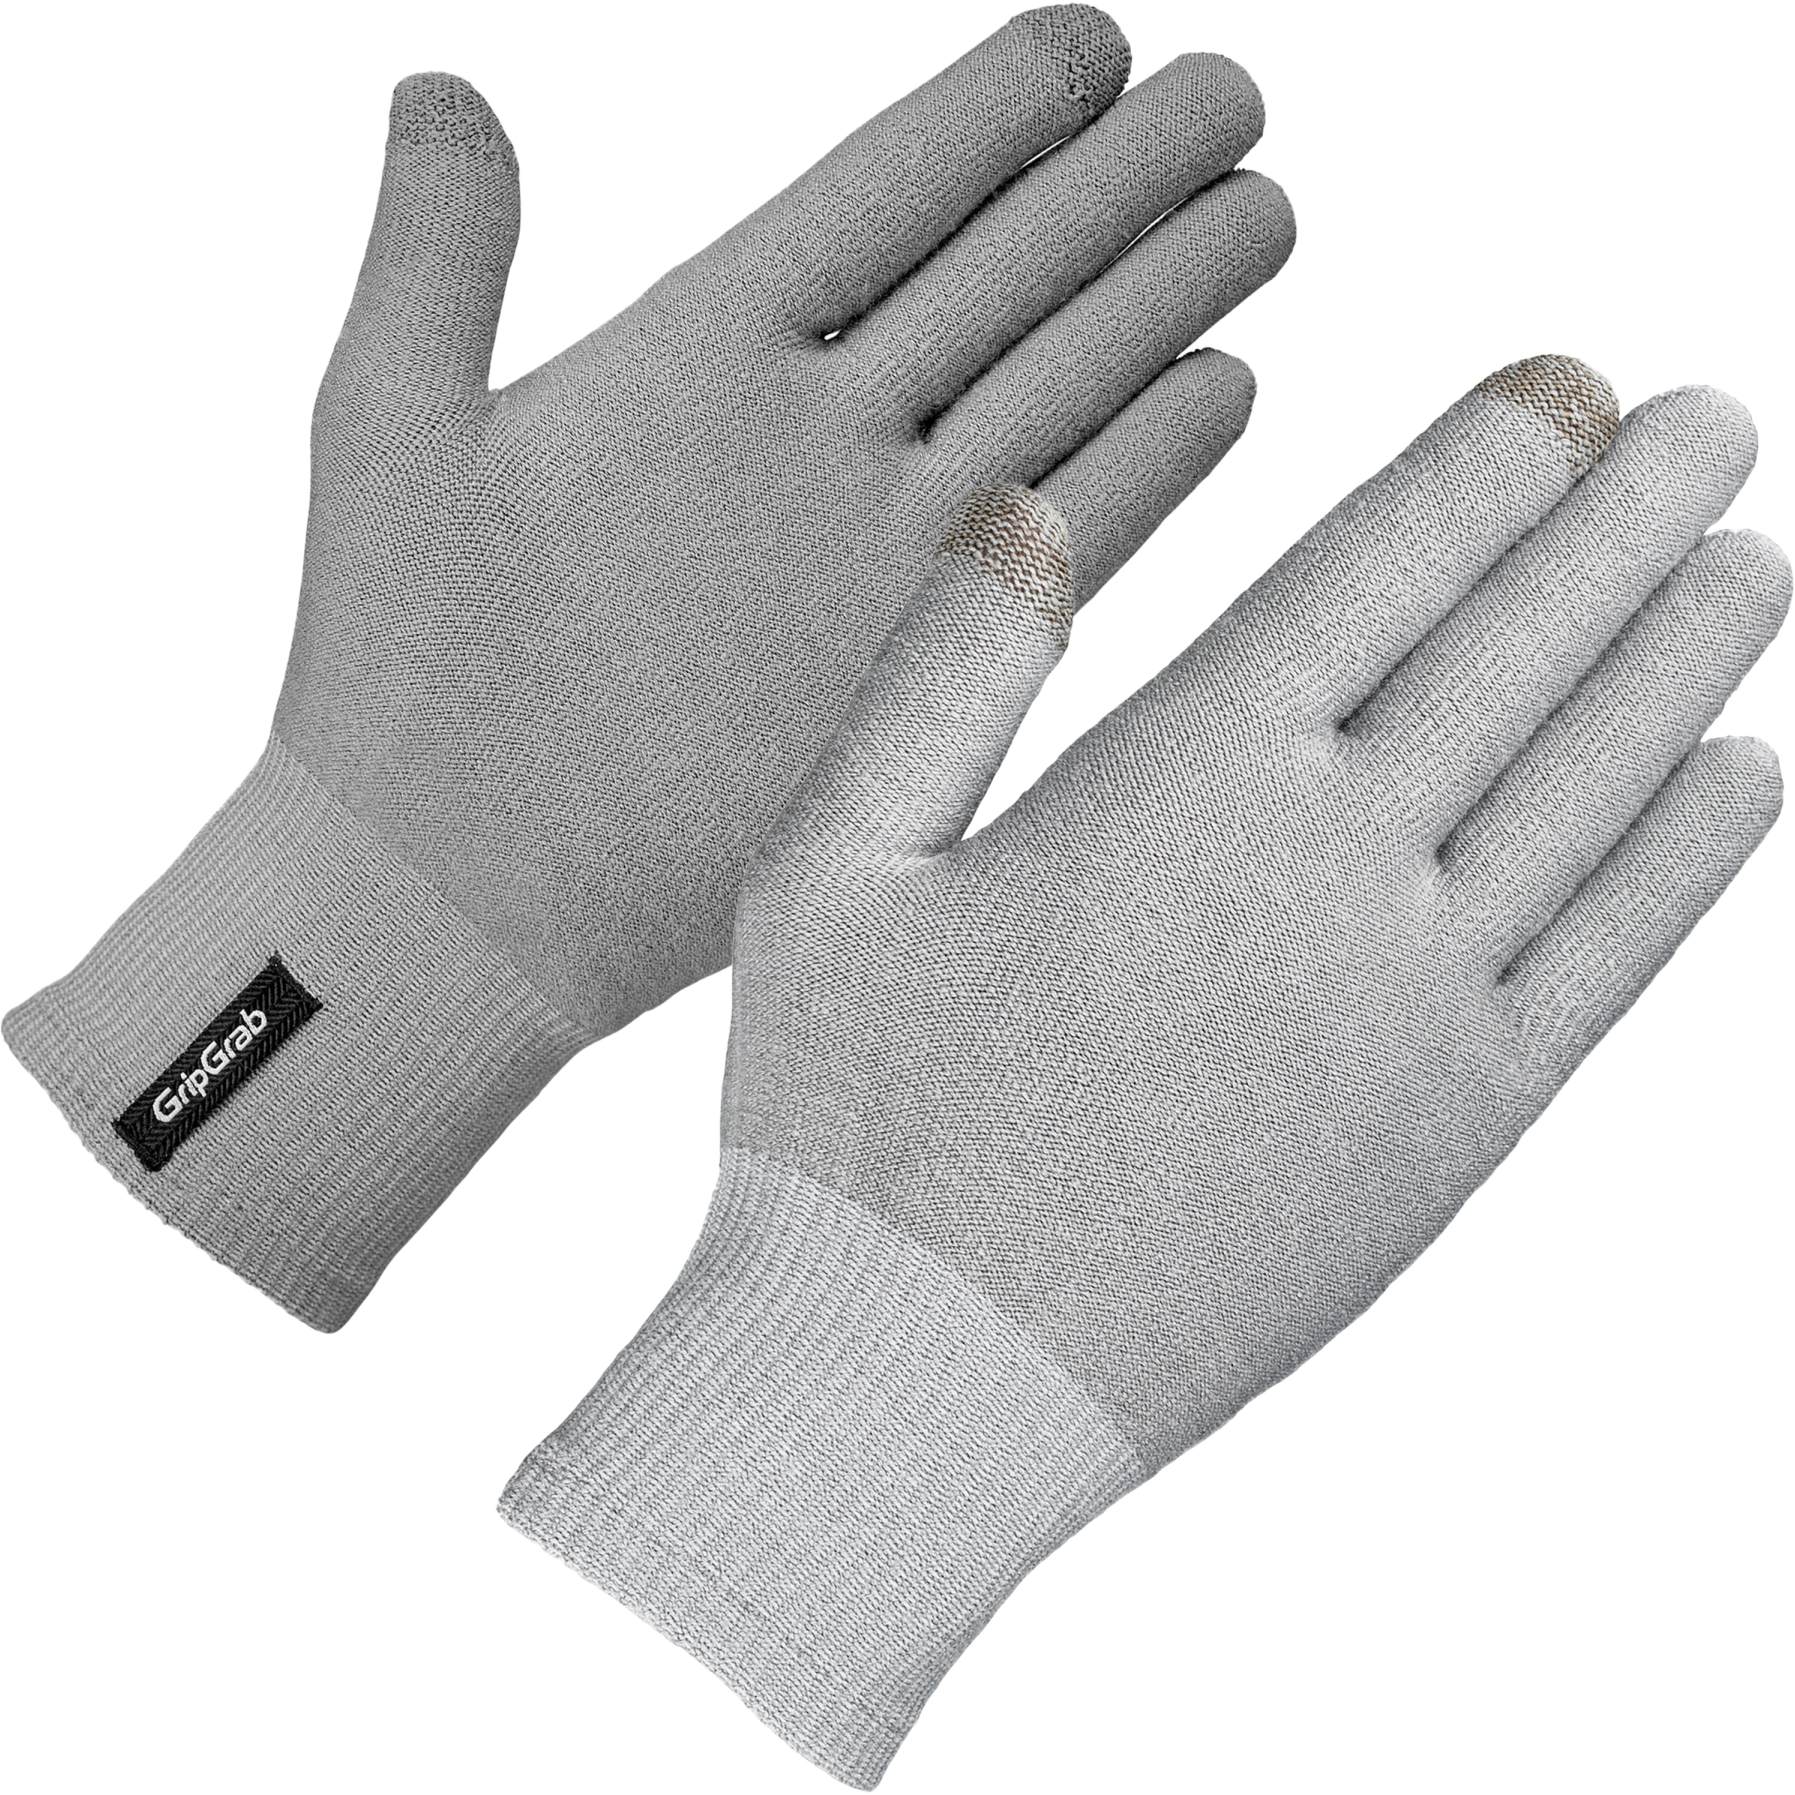 Produktbild von GripGrab Merino Unterzieh Handschuh - Grey